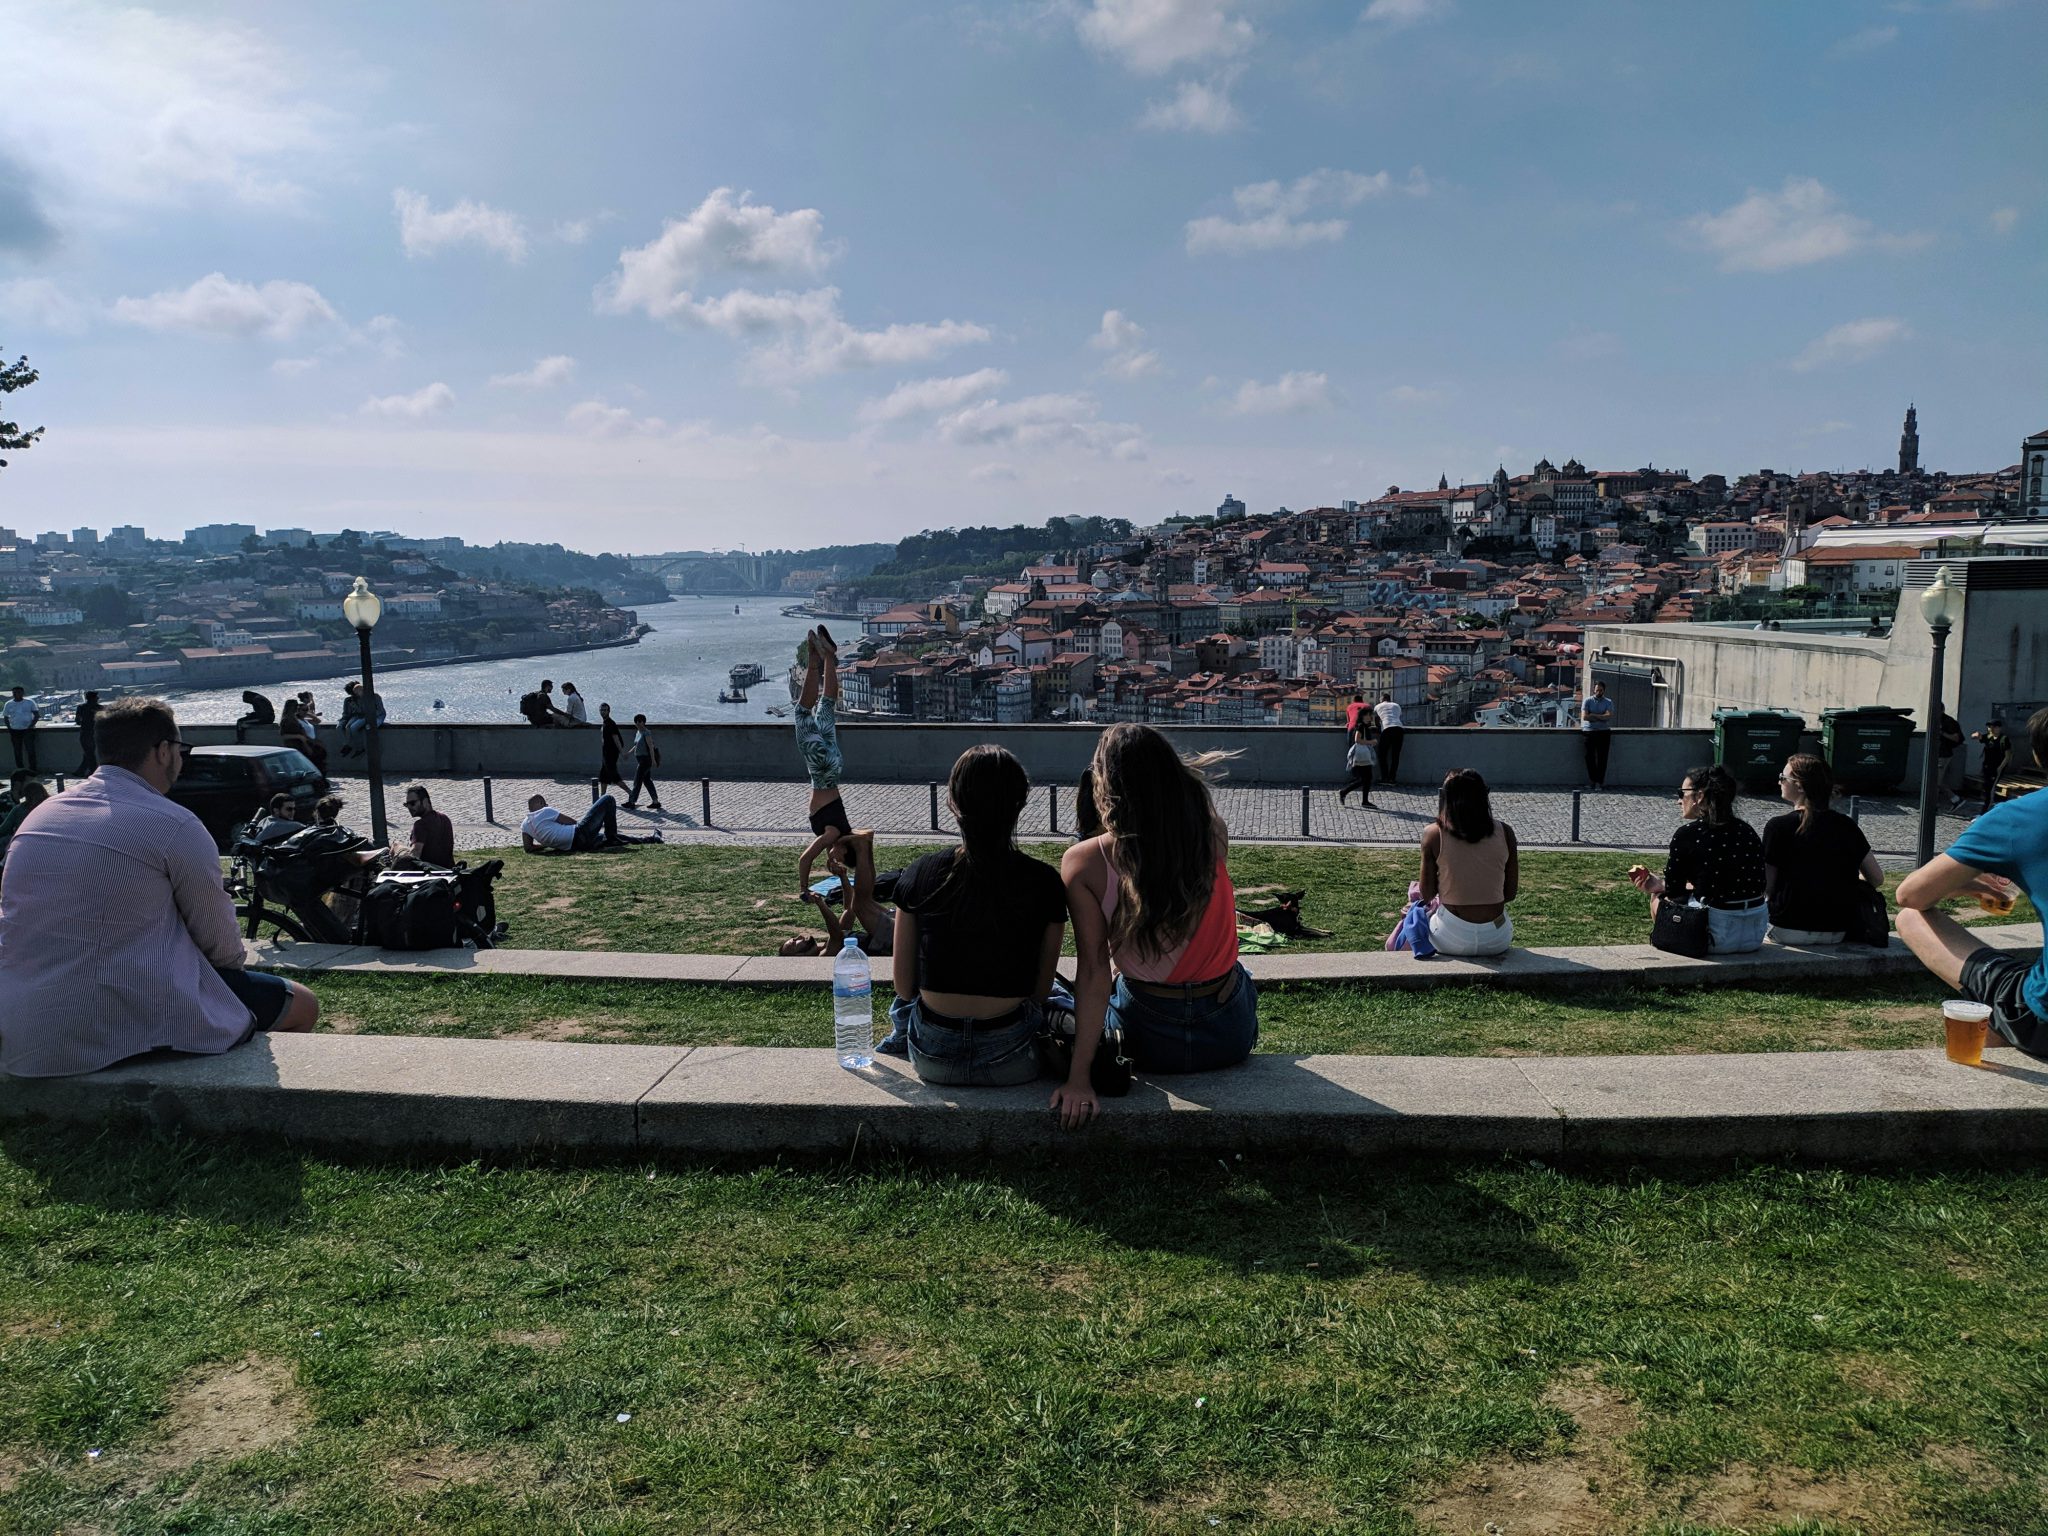 20-Minute Bus Ride in Porto to Therapeutic Presence